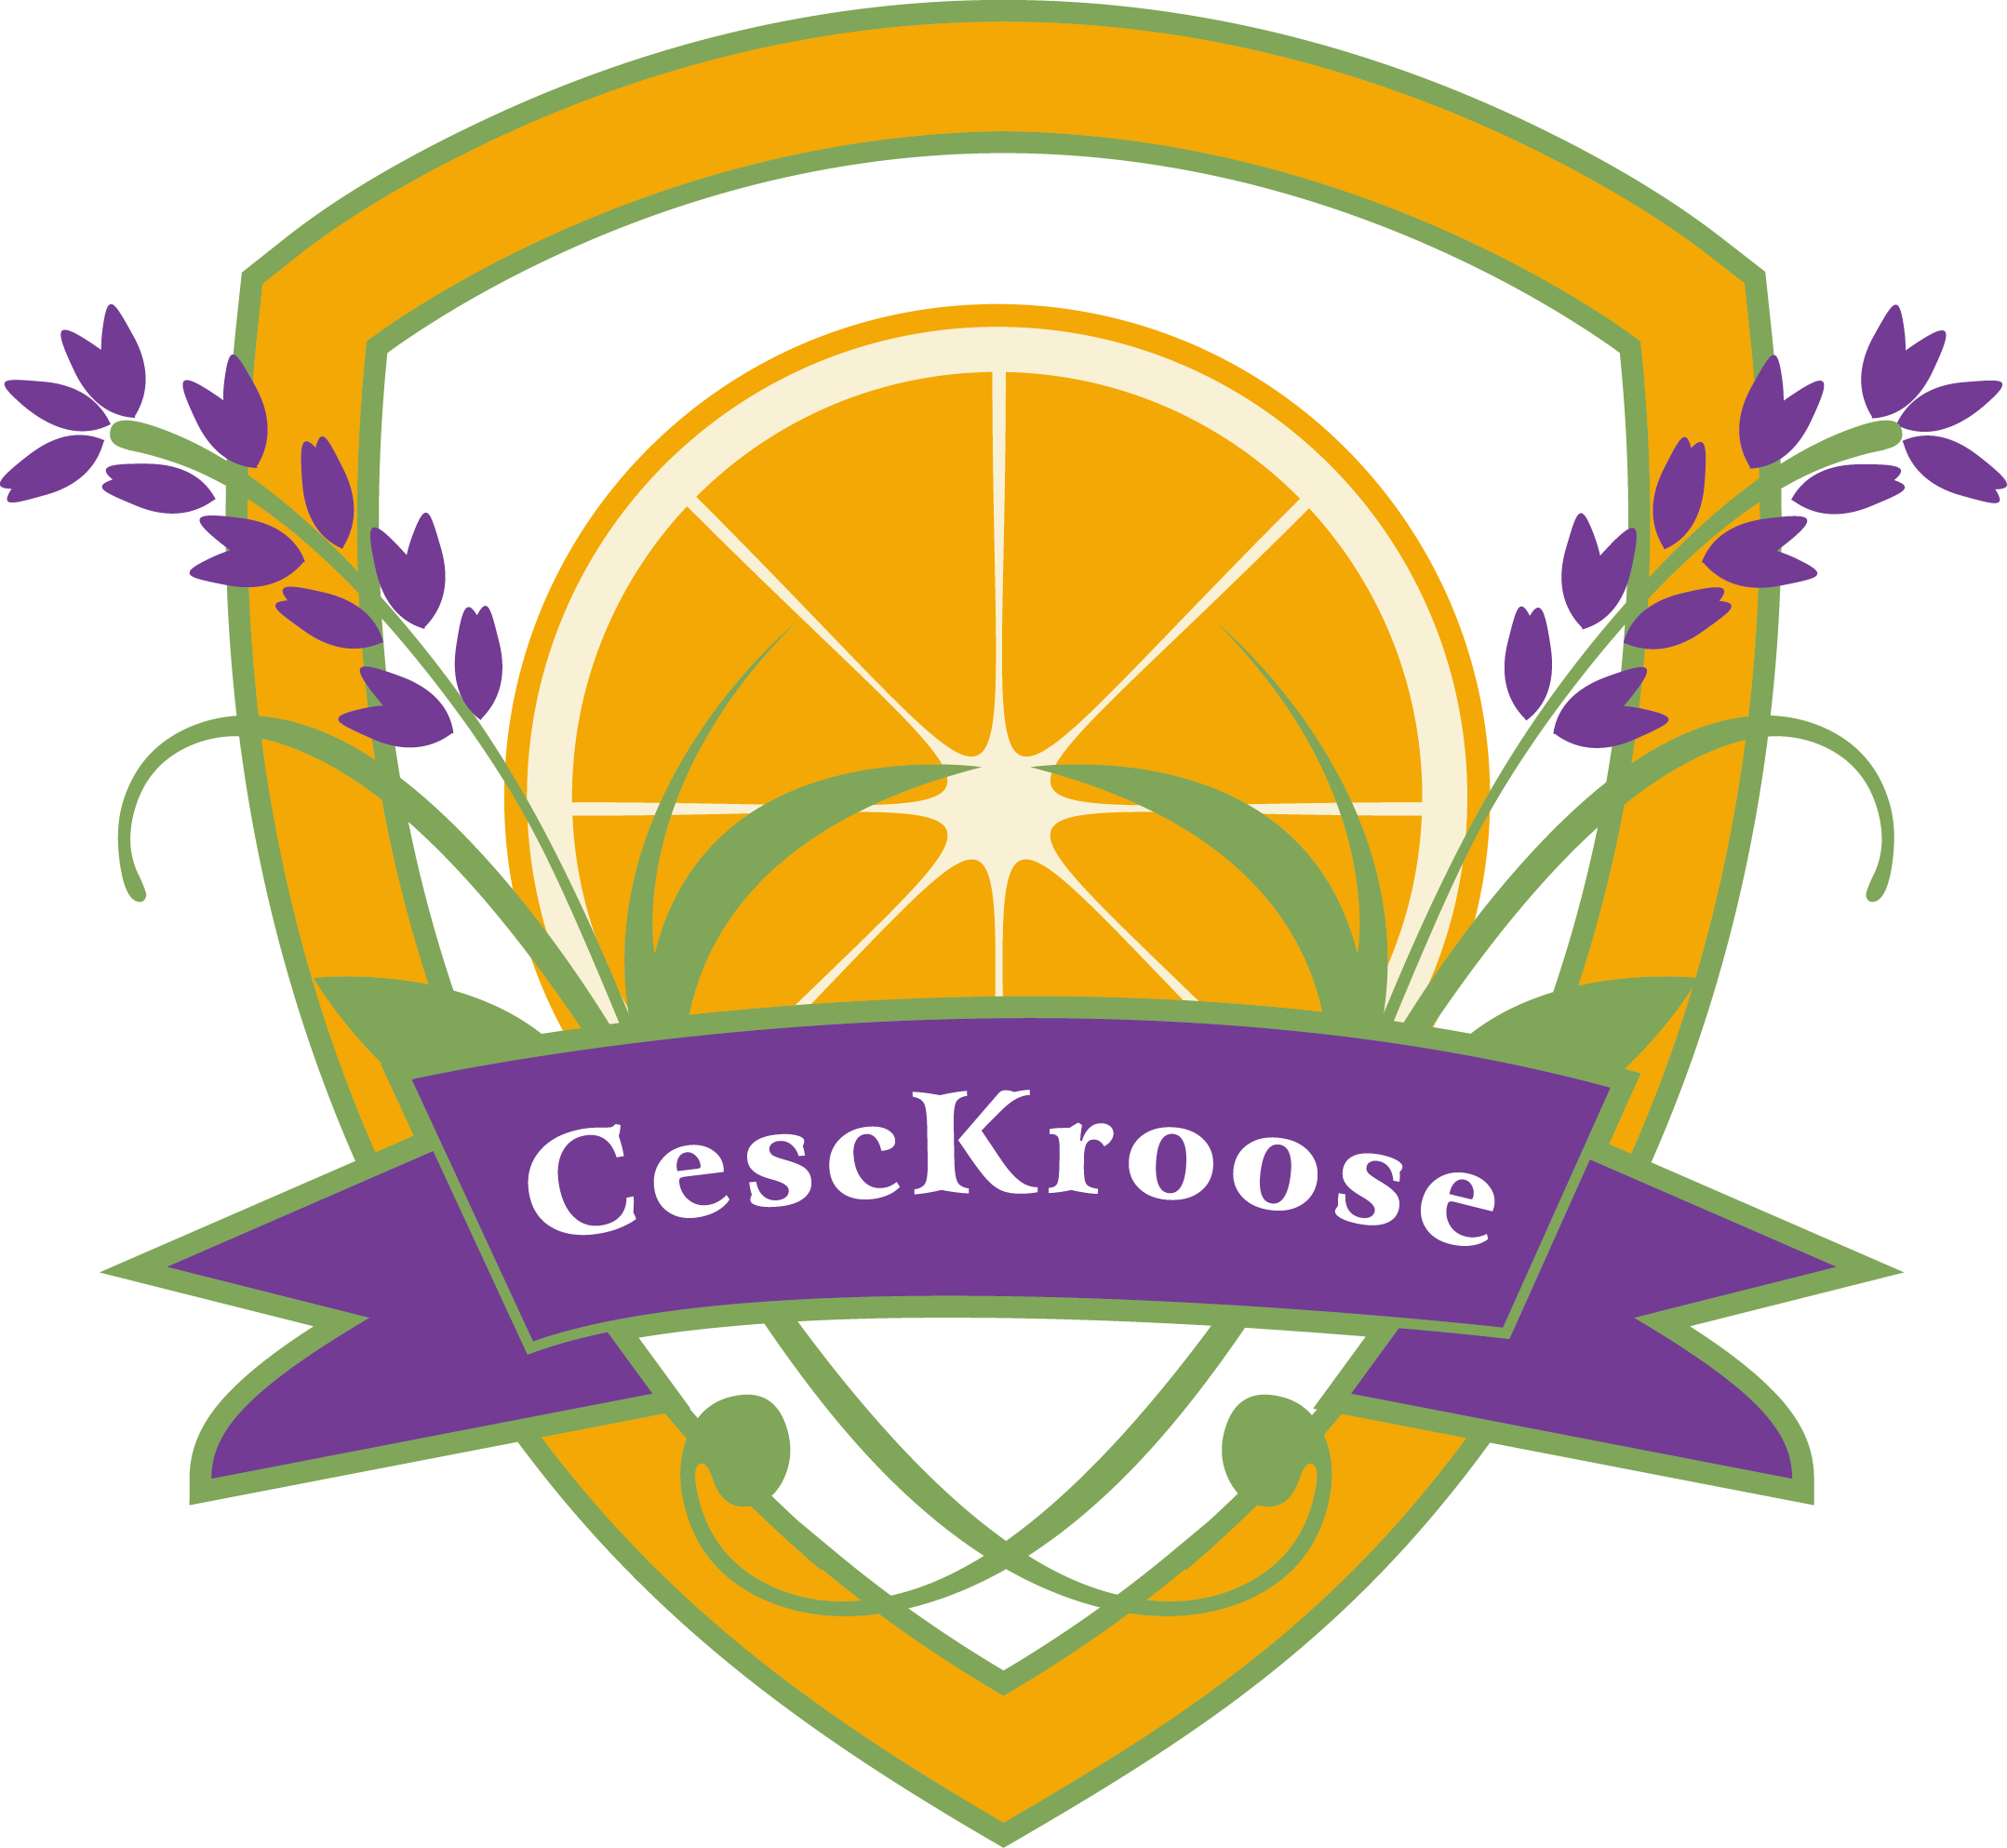 CescKroose